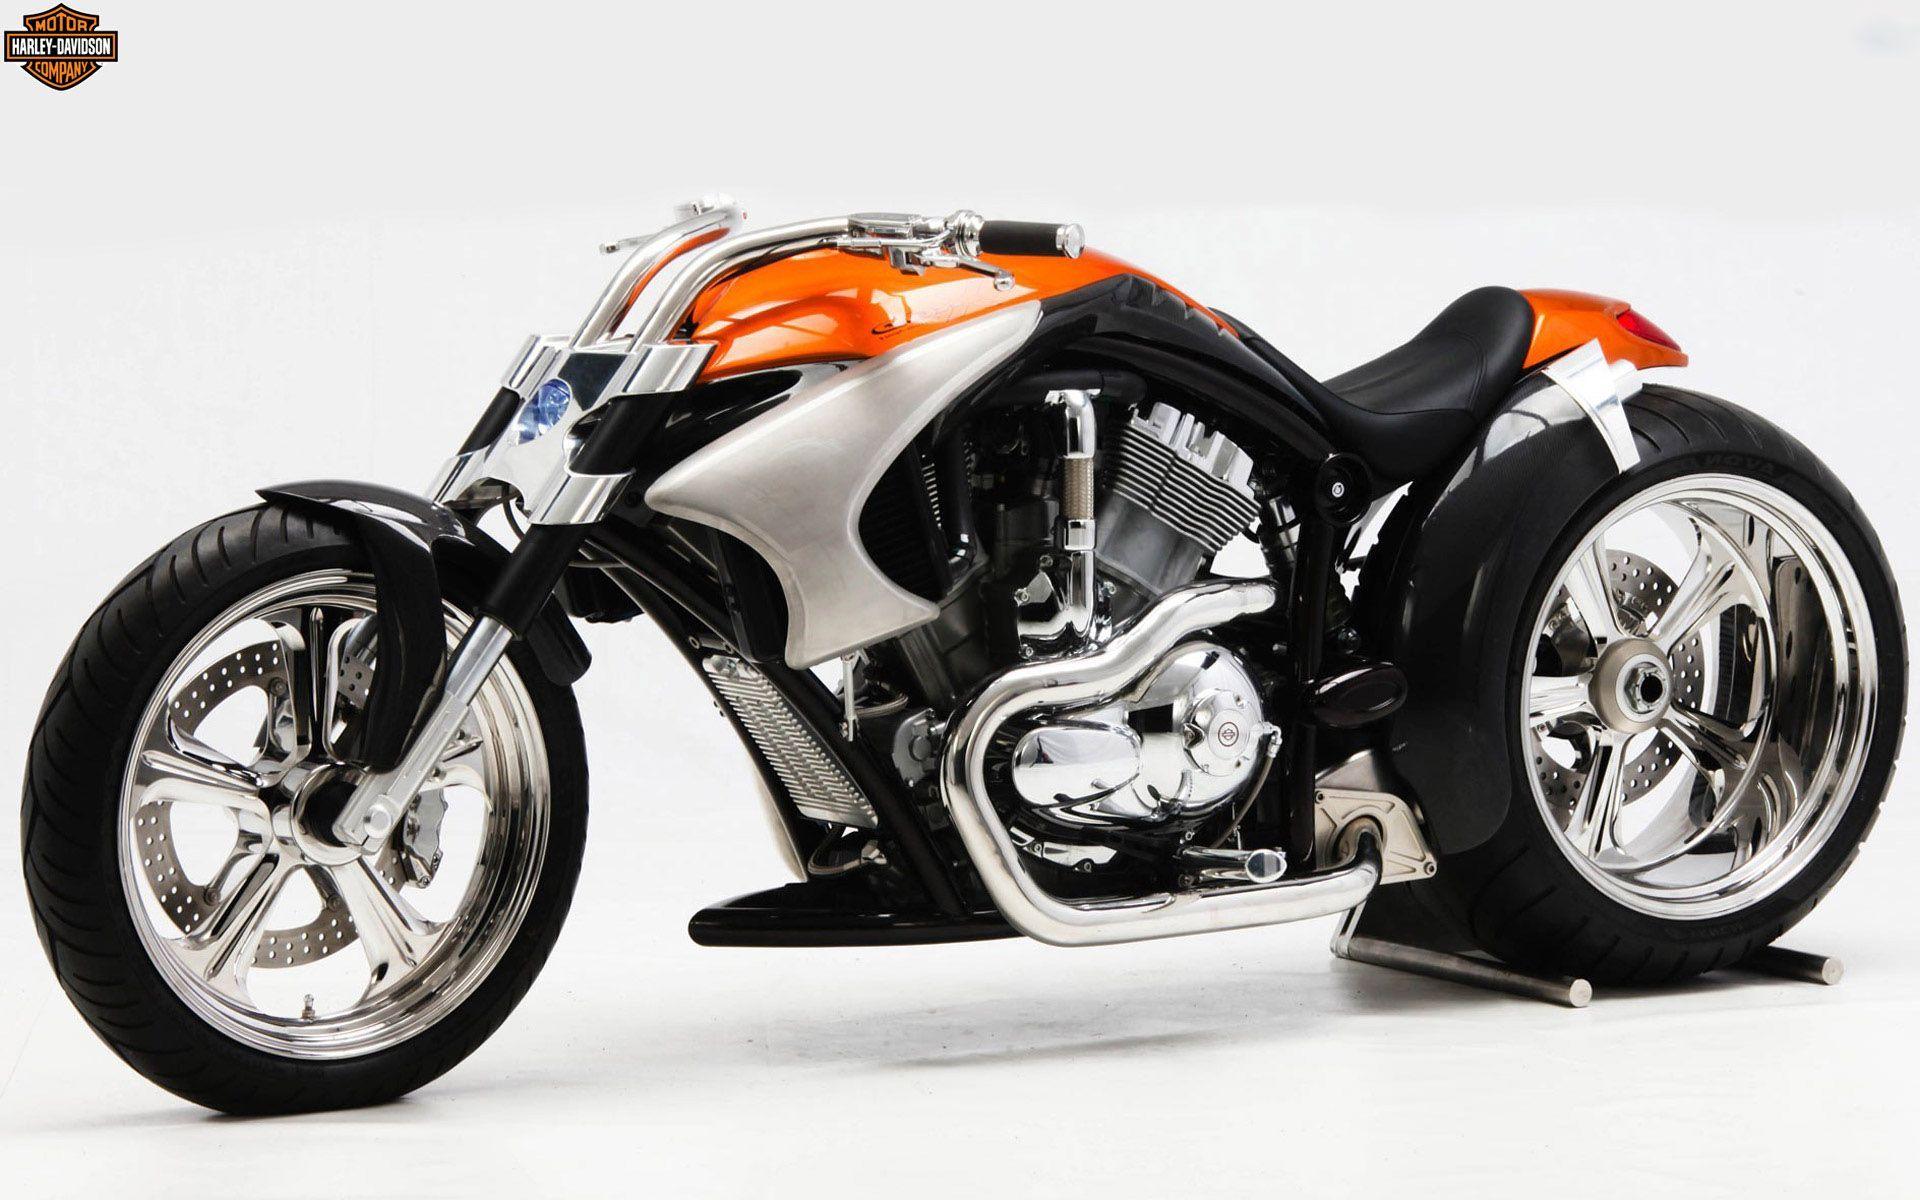 Hình nền Harley Davidson chất lượng HD 1920x1200 miễn phí, Hình ảnh